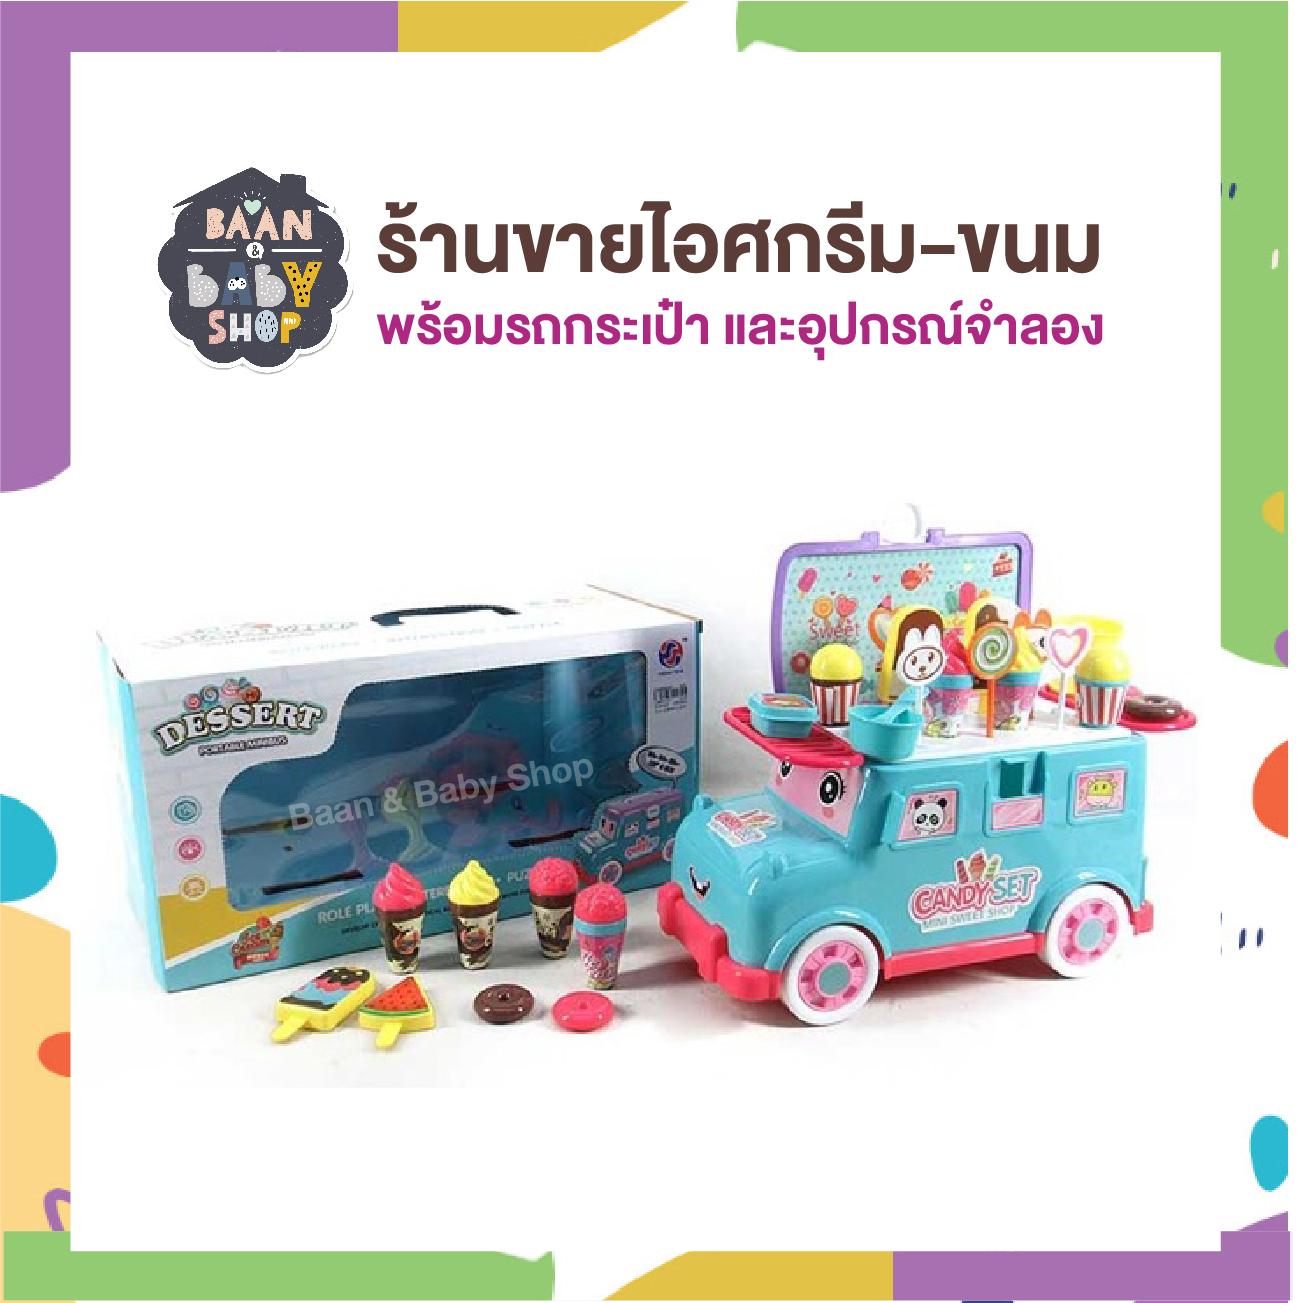 ร้านขายไอศกรีม-ขนมของเล่นมินิ พร้อมรถกระเป๋า และอุปกรณ์จำลอง ของเล่นเด็ก ร้านขายไอติมของเล่น ของเล่นบทบาทสมมุติ Portable Mini Ice Cream Candy Shop Cart Toy Playset Ice Cream Toy Set Cart Shop Children Role Play Toys 2016-78